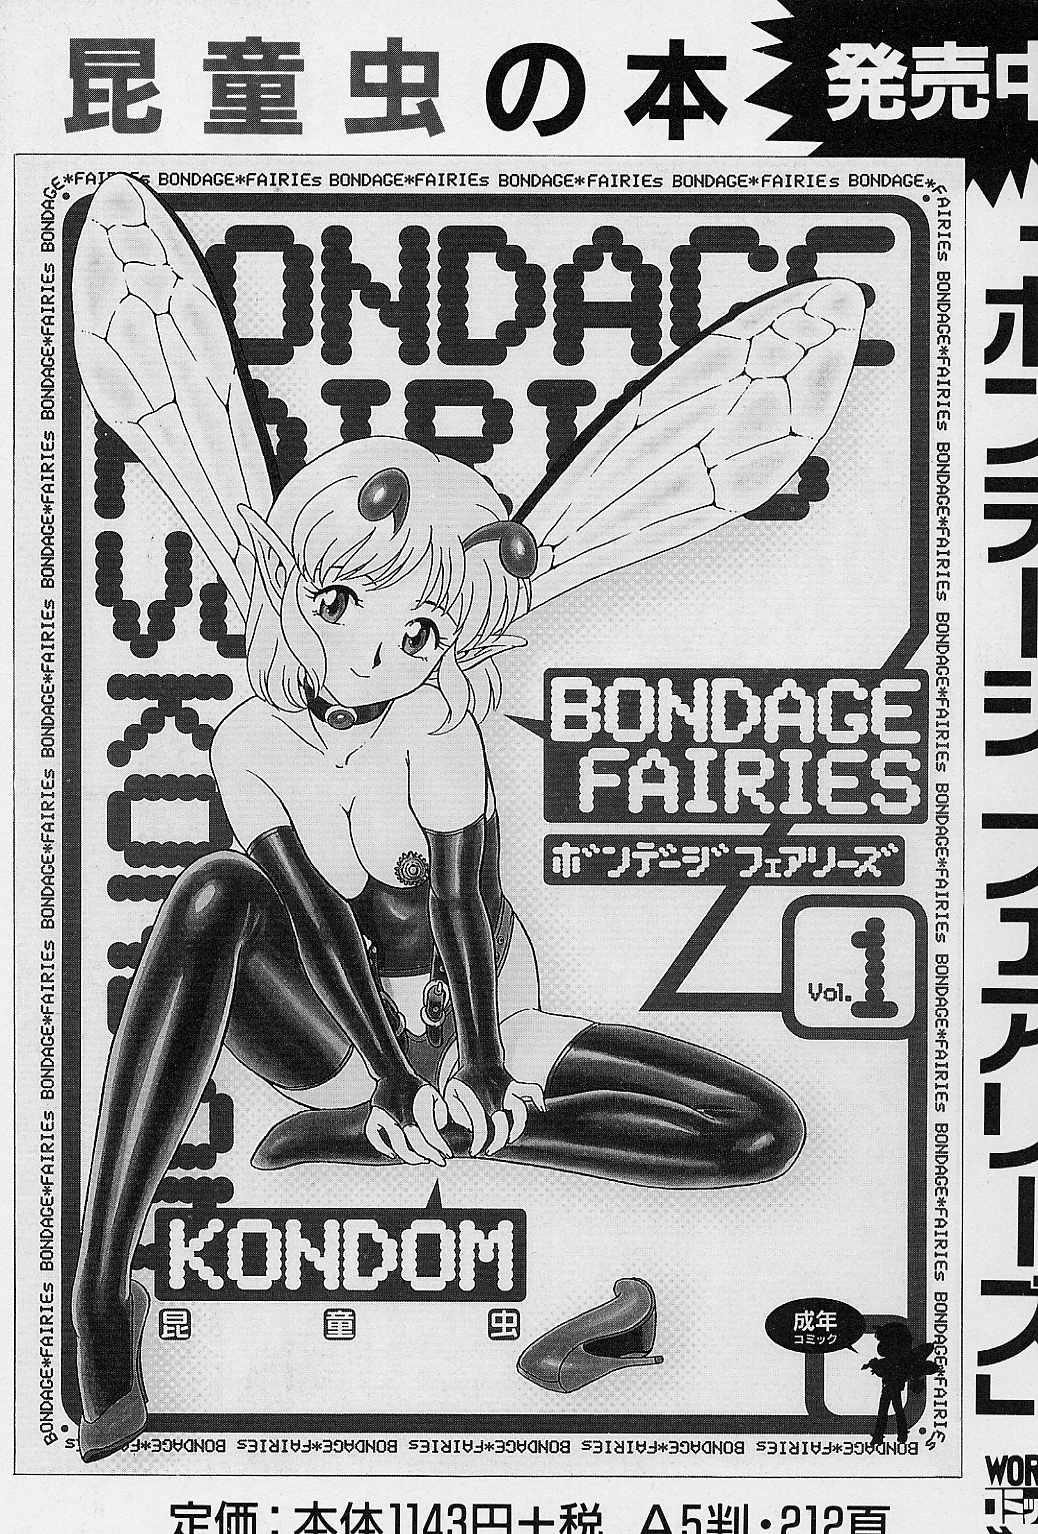 Bondage Fairies Vol. 2 163